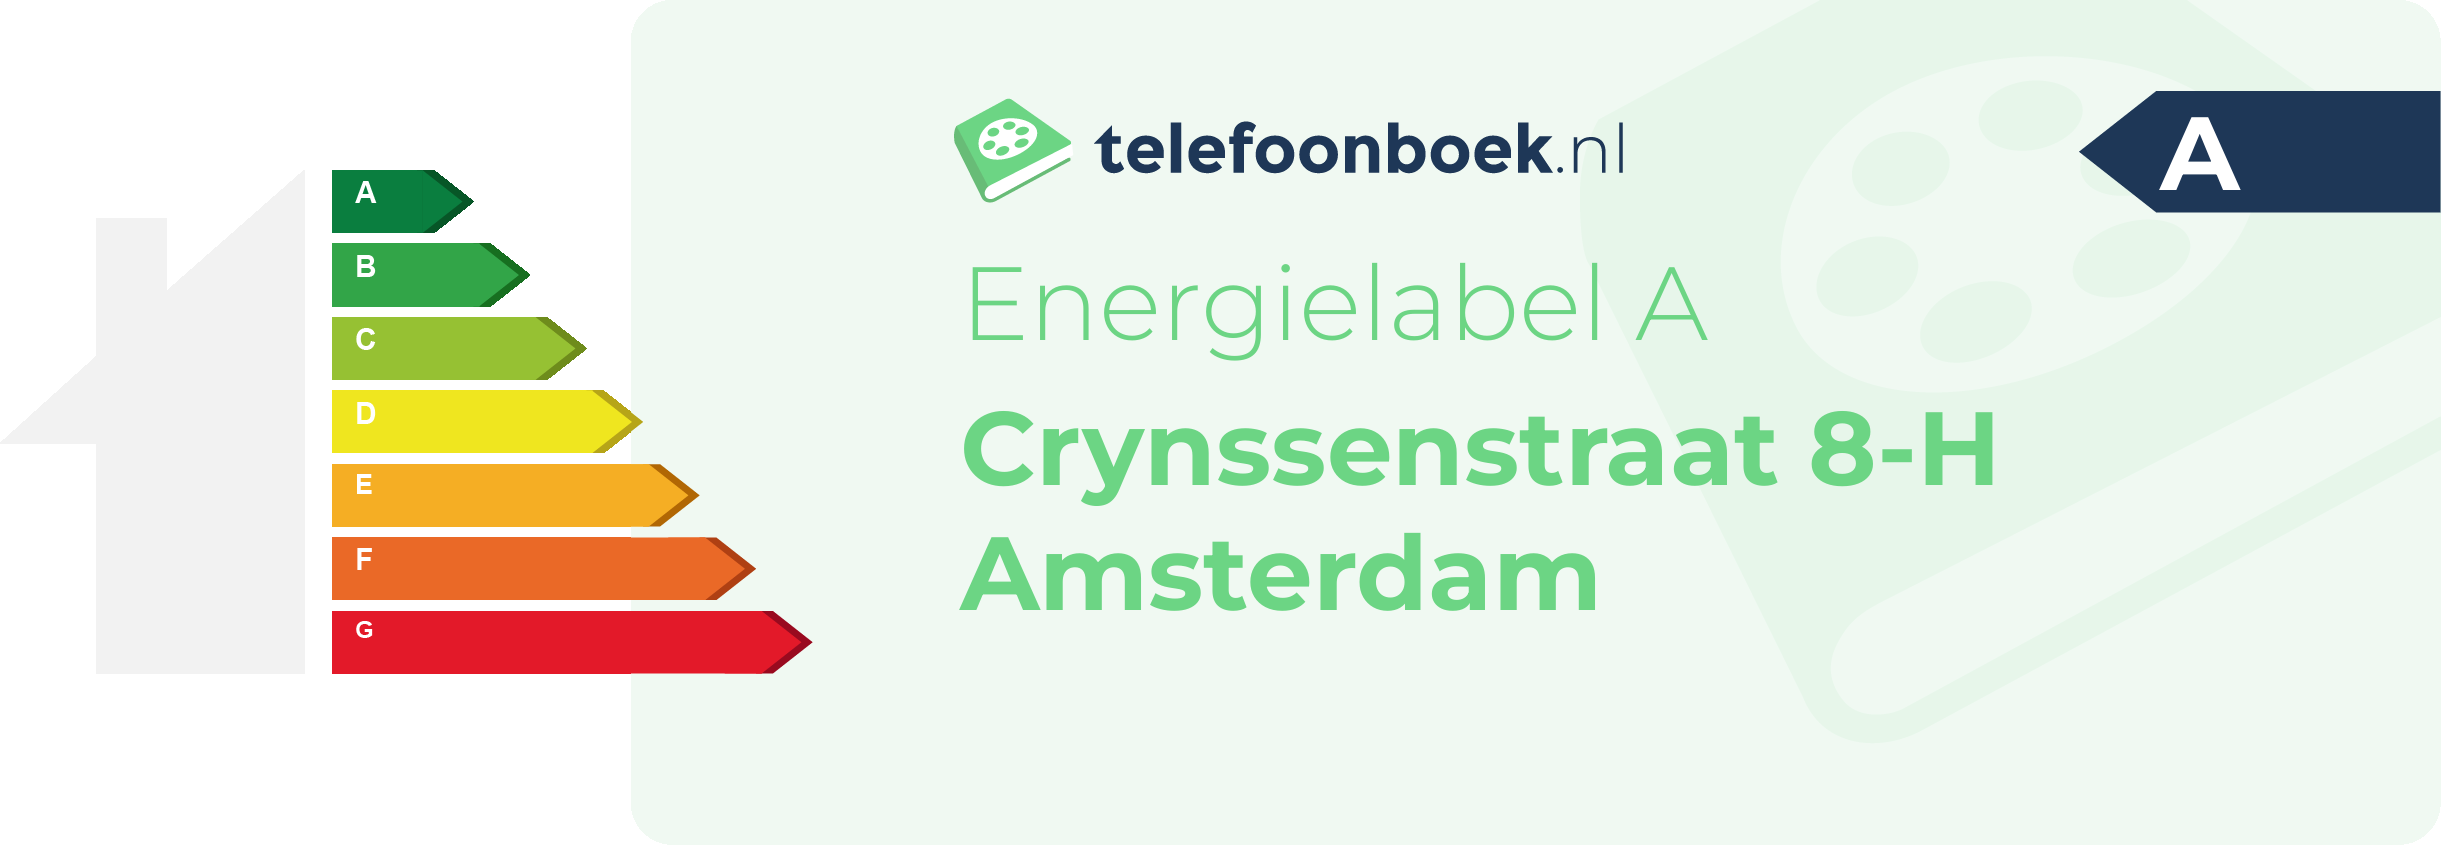 Energielabel Crynssenstraat 8-H Amsterdam